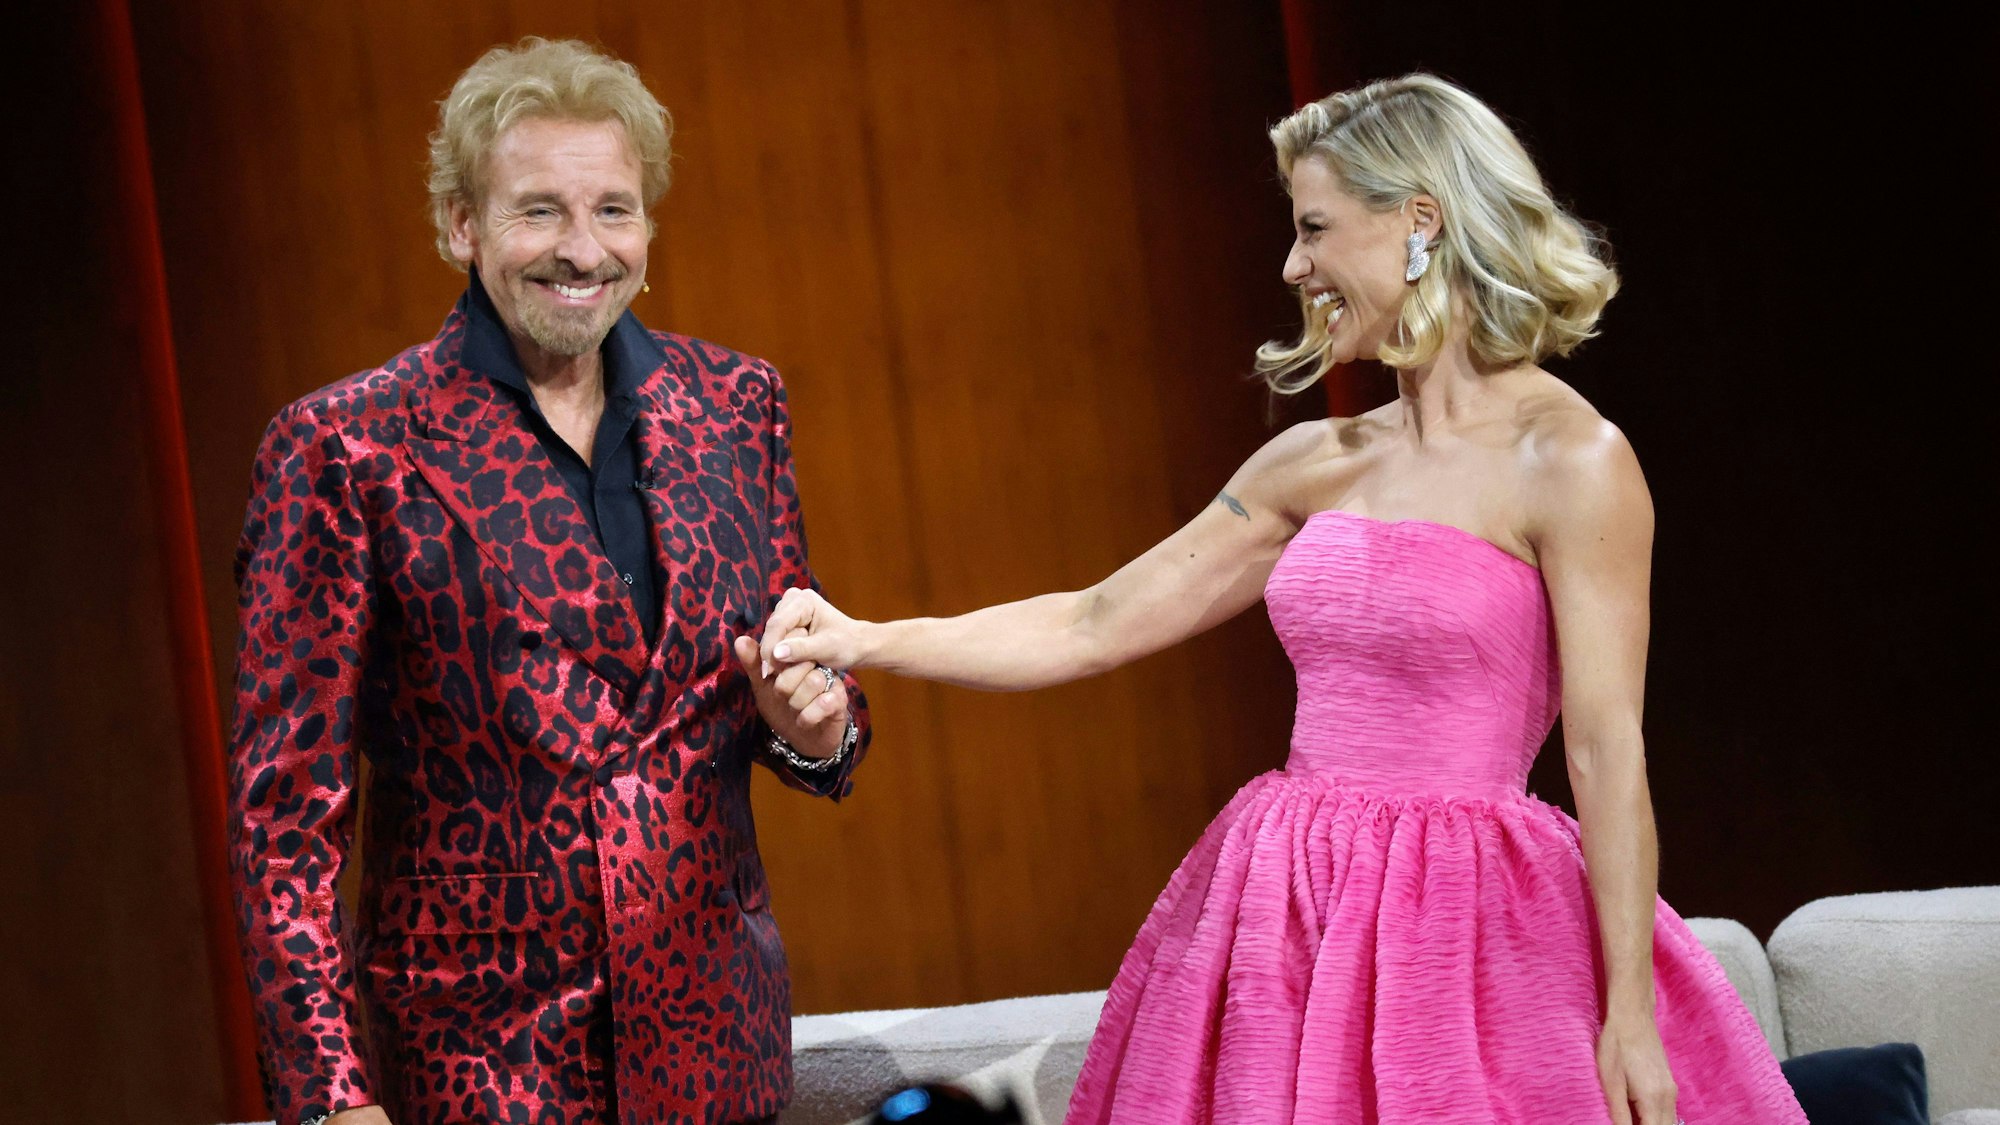 Thomas Gottschalk im roten Leoprint-Anzug und Michelle Hunziker in einem pinken Kleid stehen in der Messehalle in Friedrichshafen während der "Wetten, dass..?"-Sendung